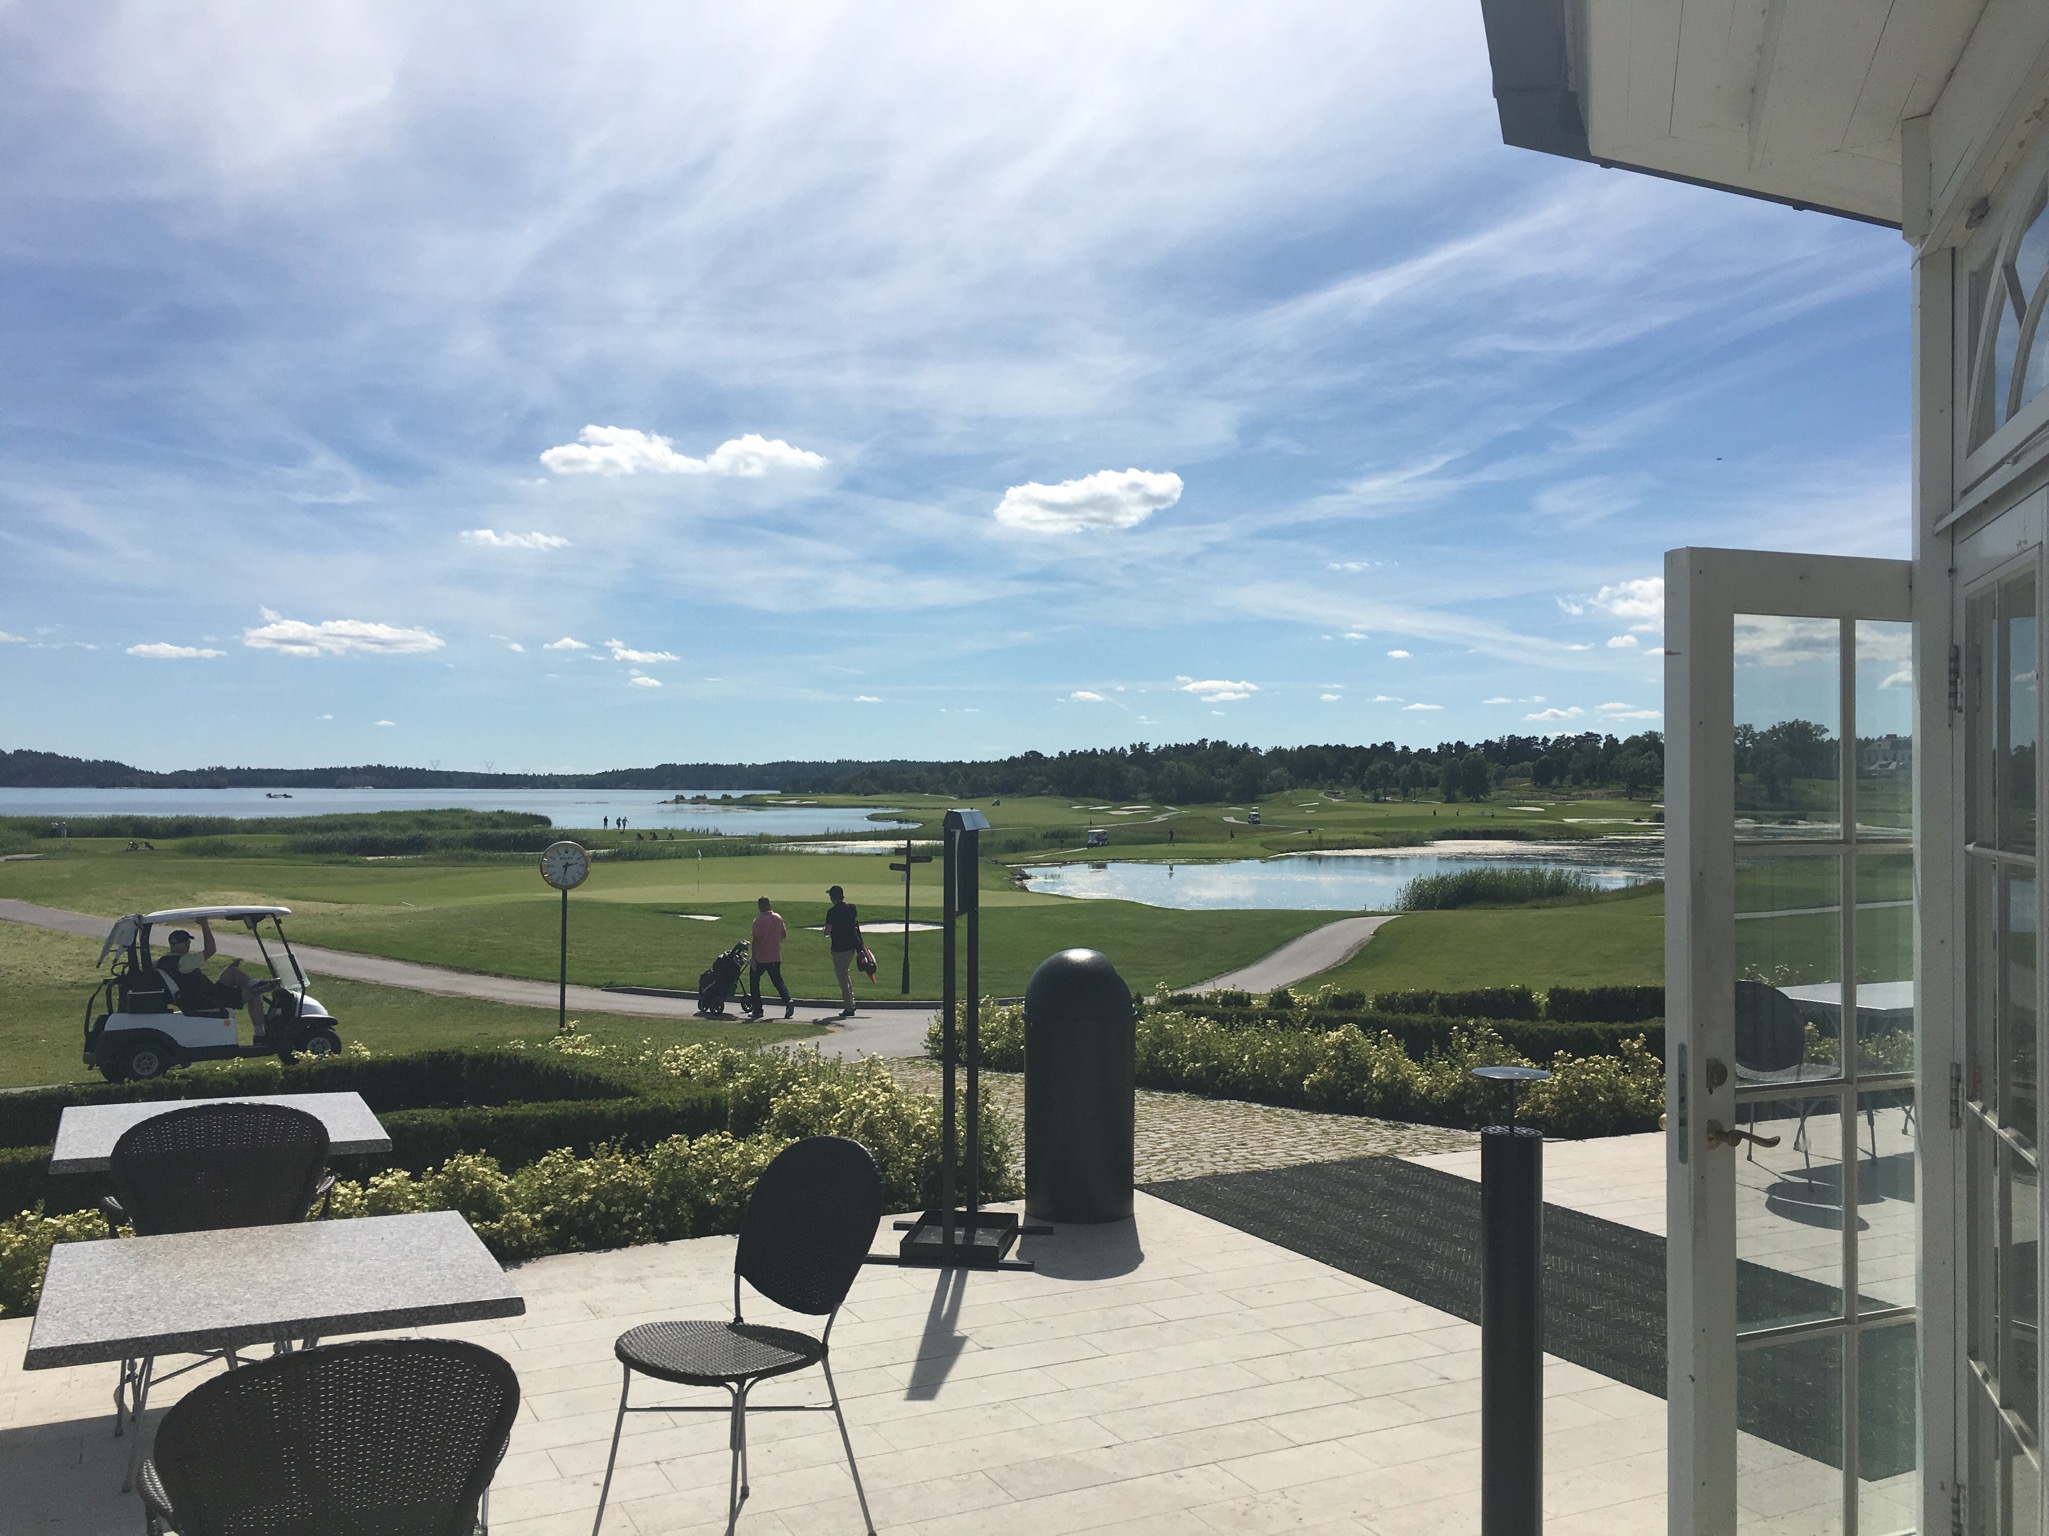 2016 Baltic Sea PerryGolf Cruise - Bro Hof Slott Golf Club - PerryGolf.com